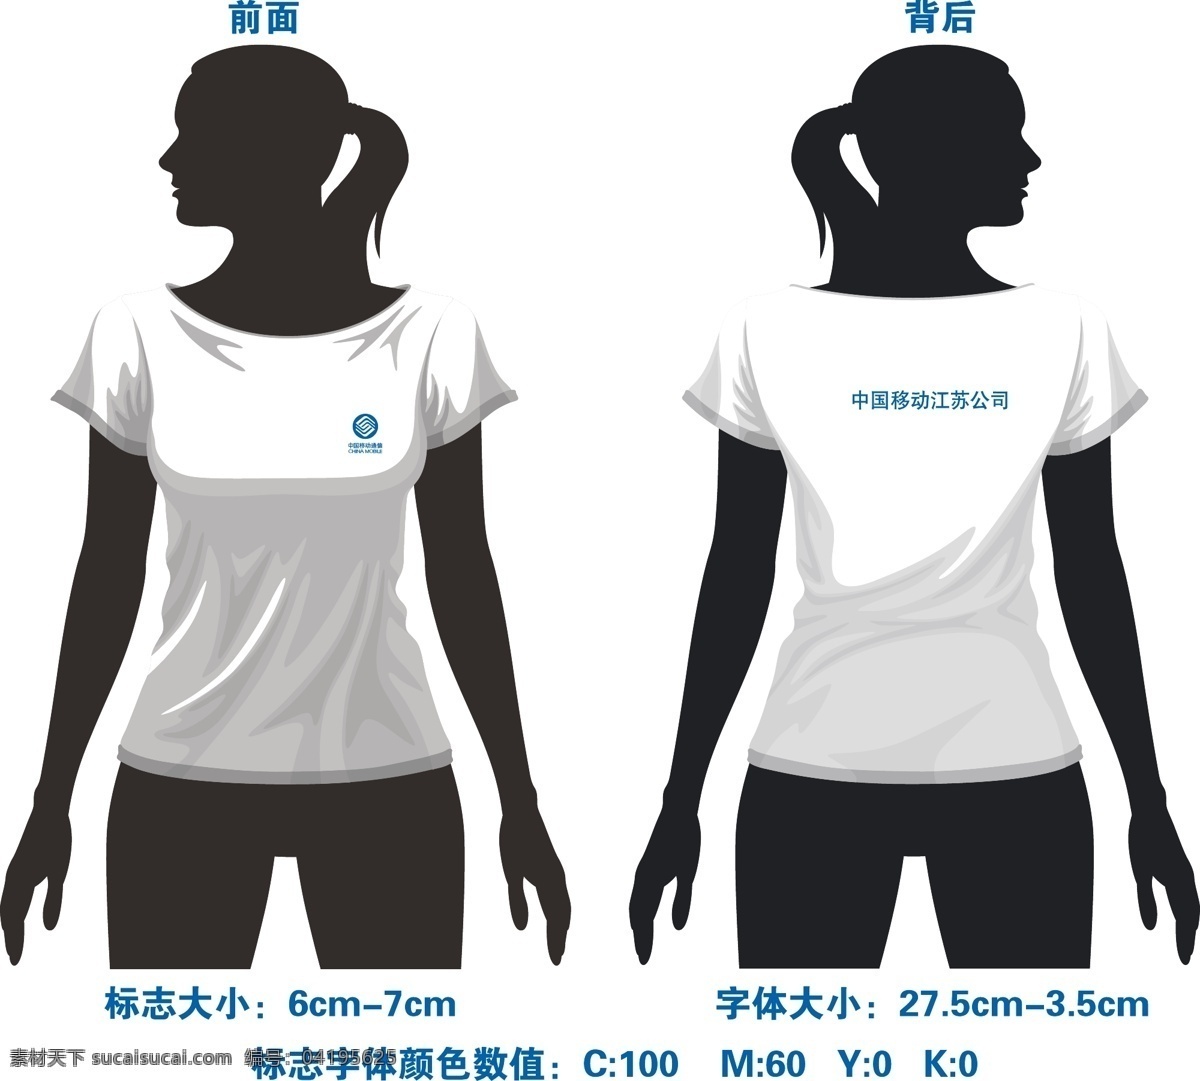 中国移动 圆领 短袖 衣服 效果 服装设计 圆领短袖 矢量 其他服装素材